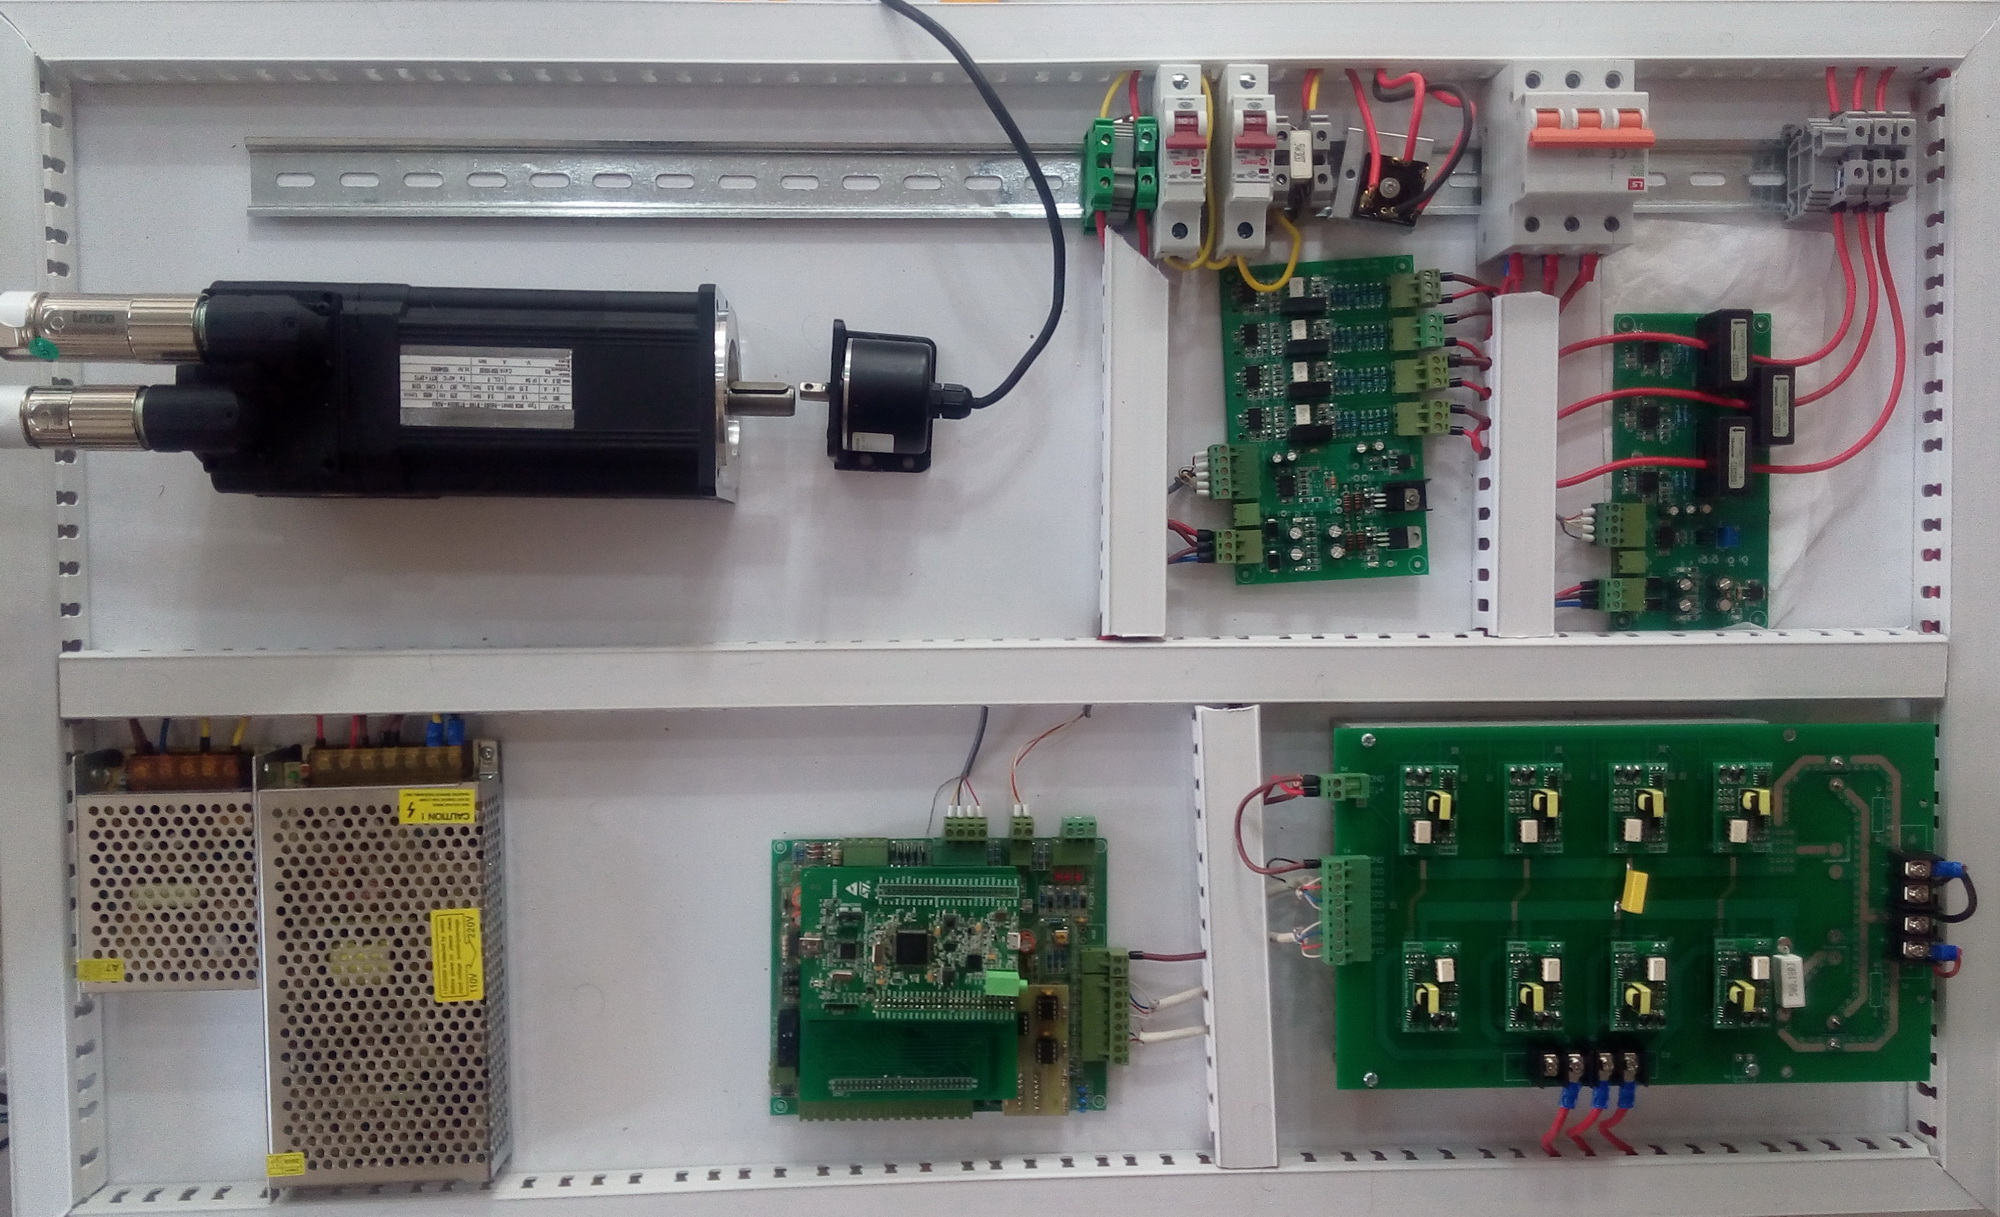 مجموعه تحقیقاتی درایوهای الکتریکی با میکروکنترلر ARM